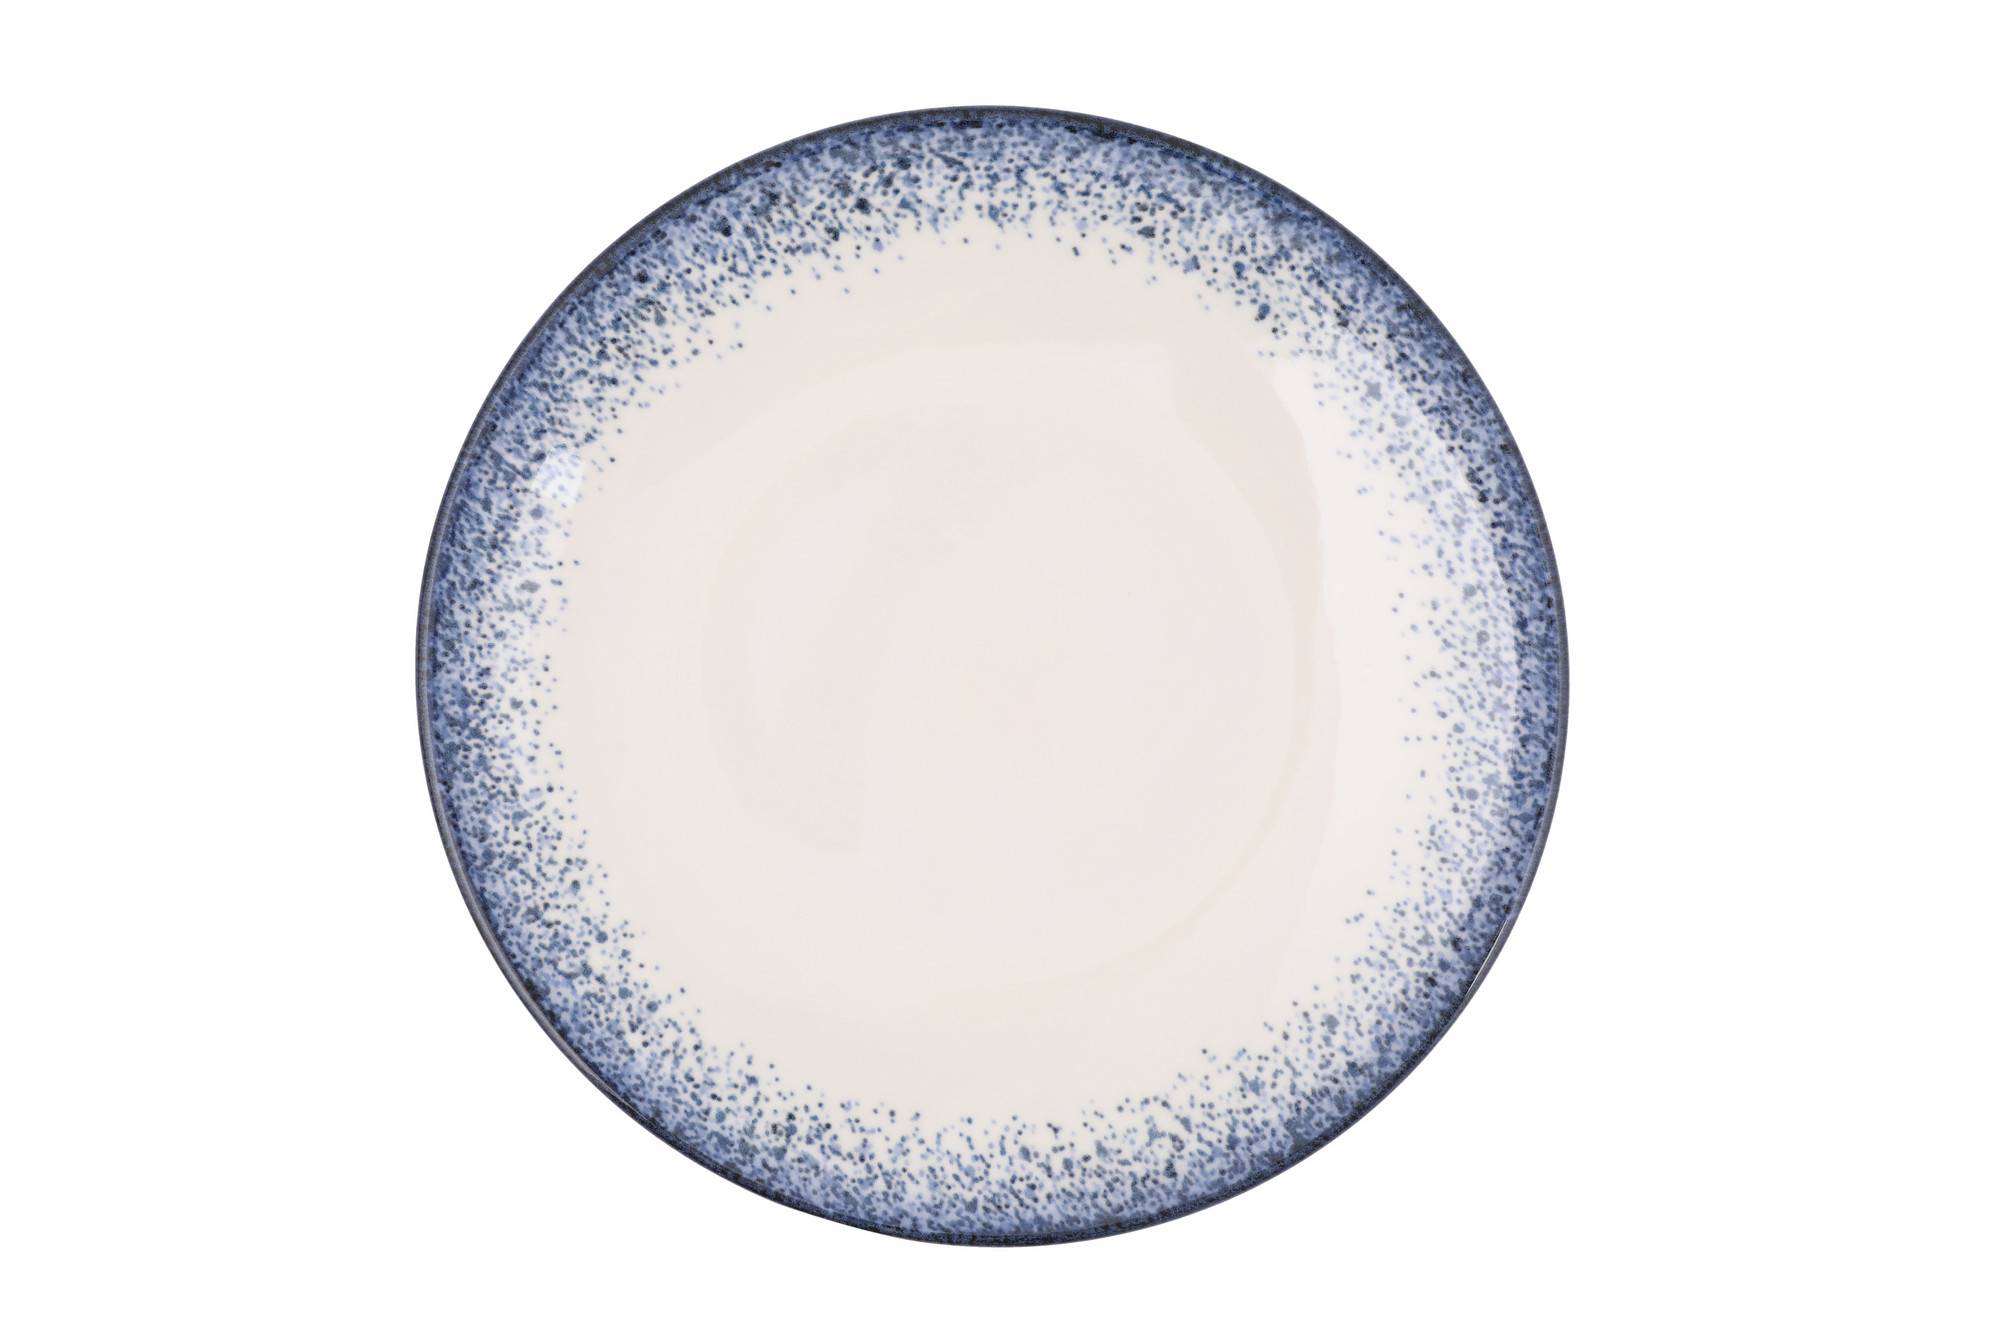 Set vaisselle service dîner 24 pièces Murrina Frise 100% Porcelaine Blanc  et Bleu